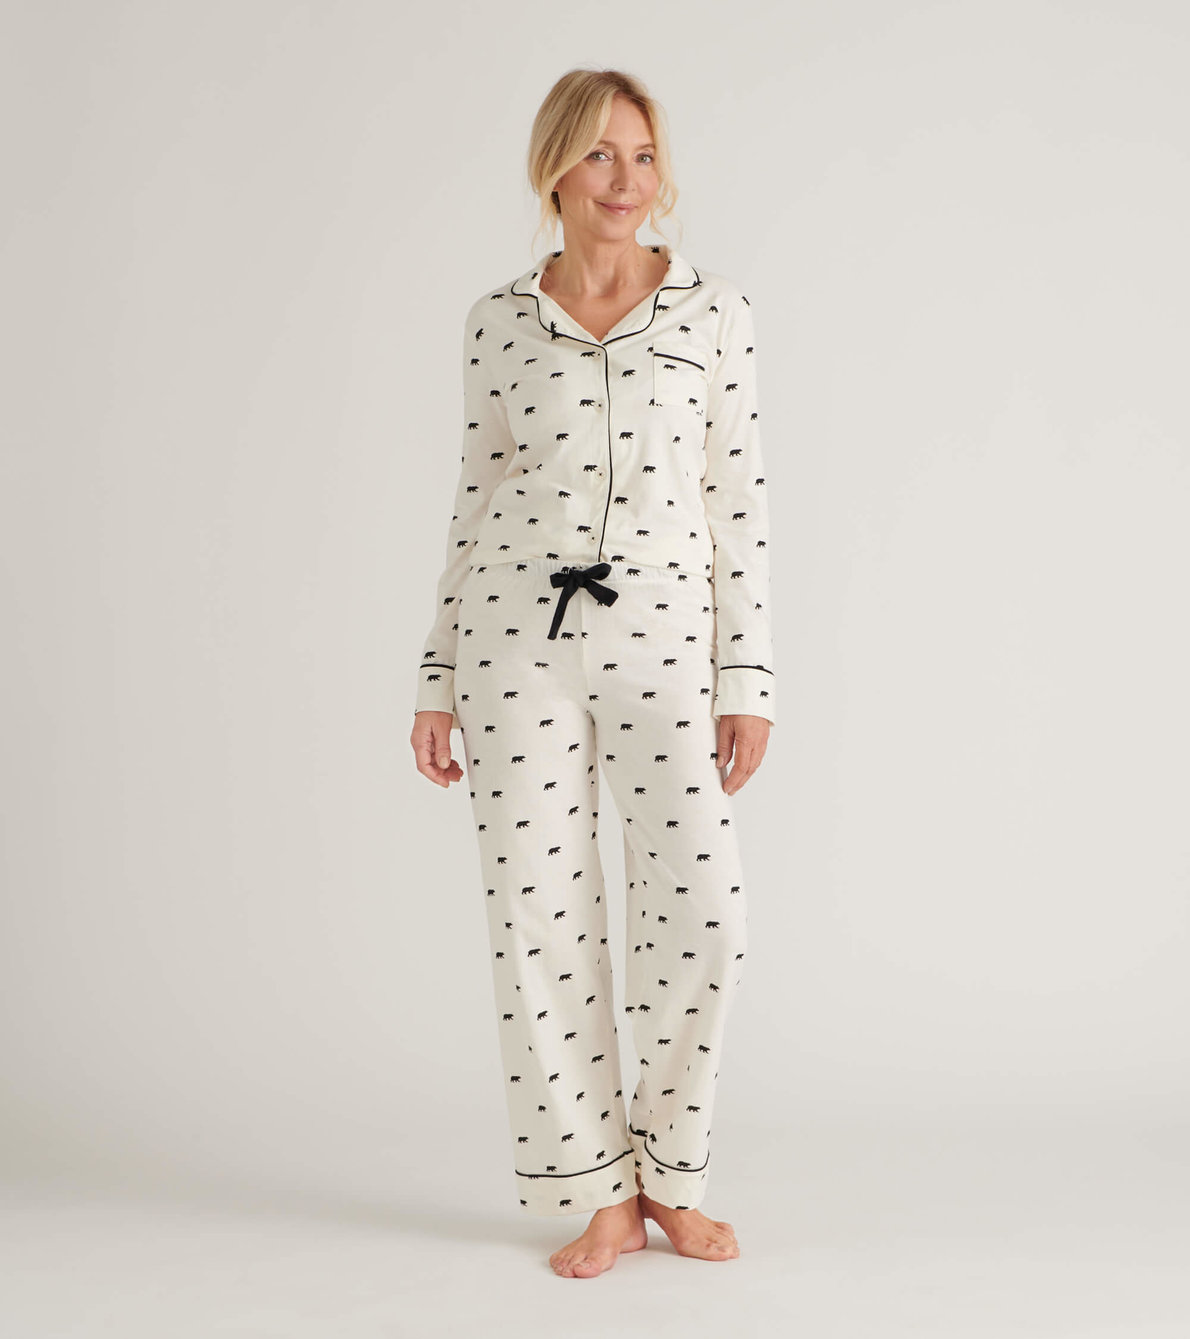 View larger image of Black Bear Women's Pajama Set